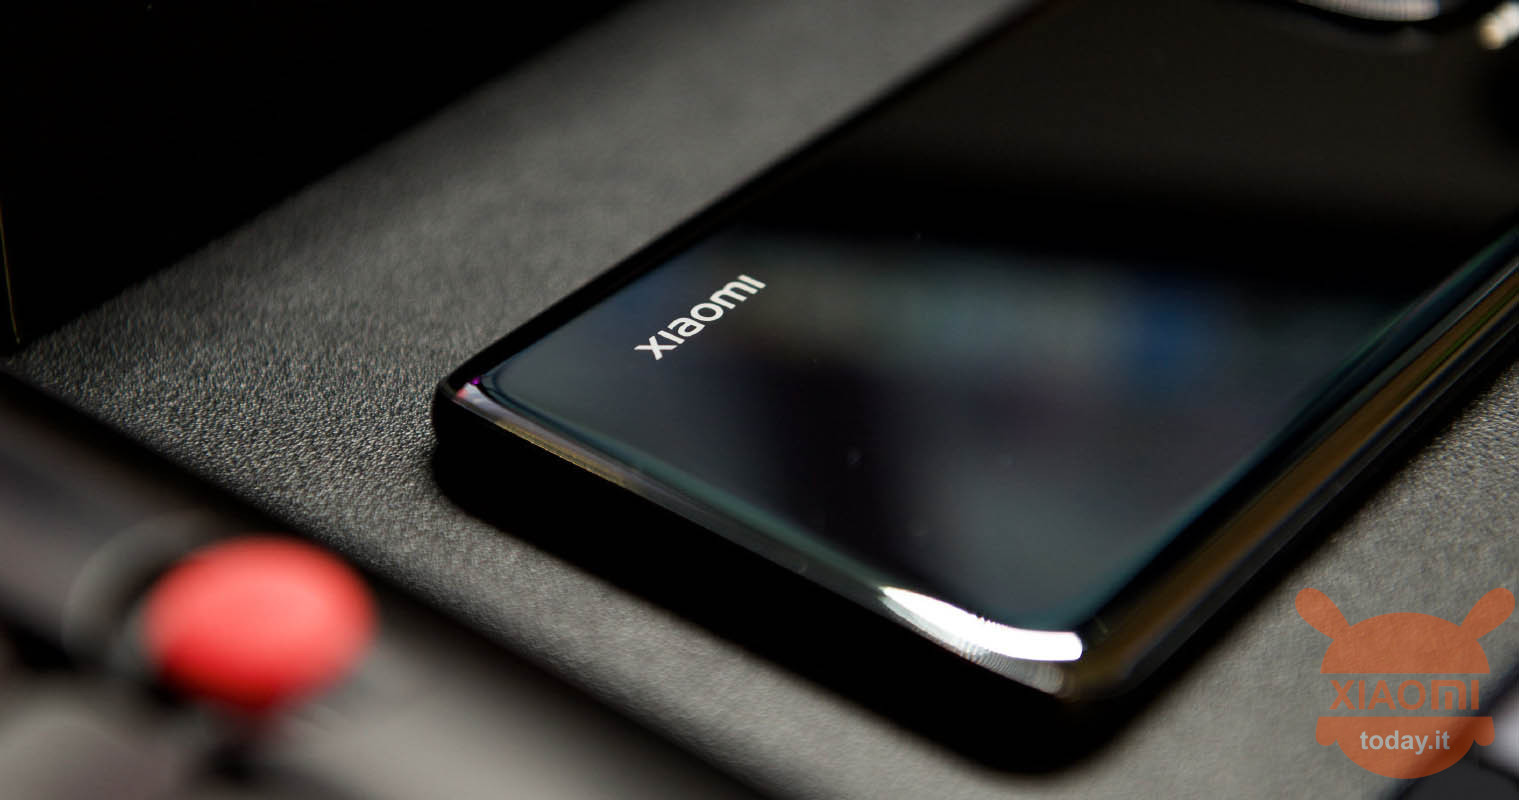 xiaomi: patent avslører en av merkevarens mest komplekse smarttelefoner